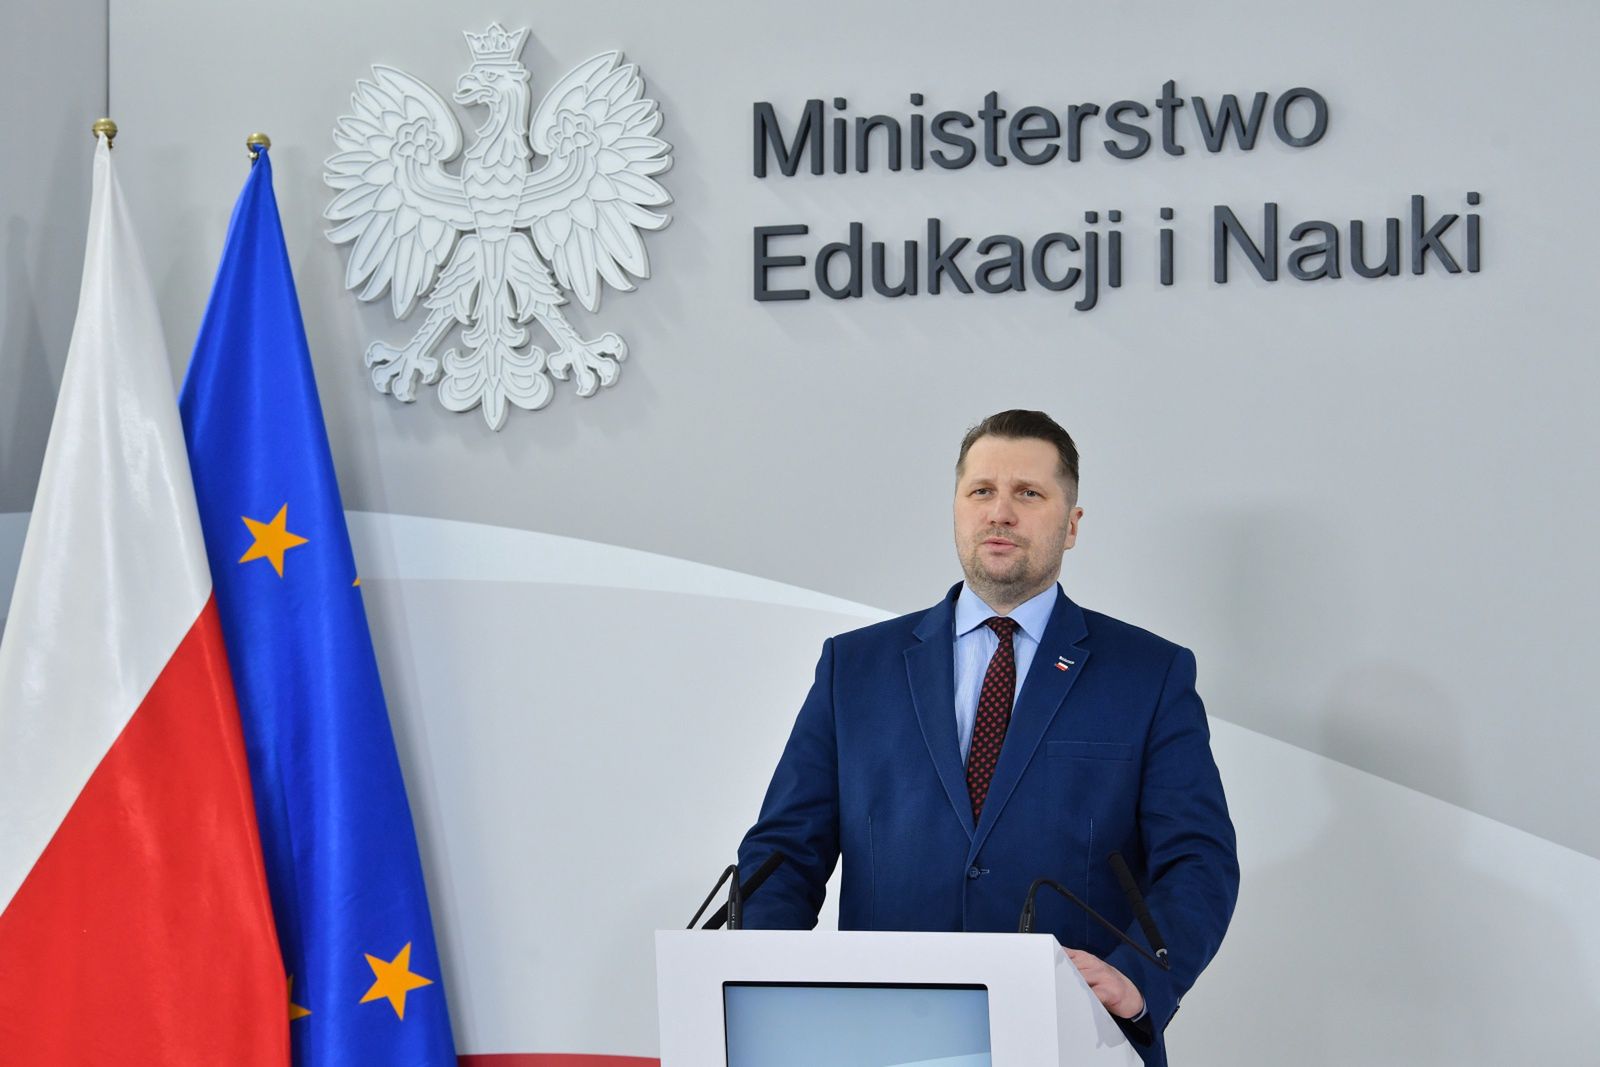 Powrót do szkół. Minister Przemysław Czarnek nie ma dobrych wieści